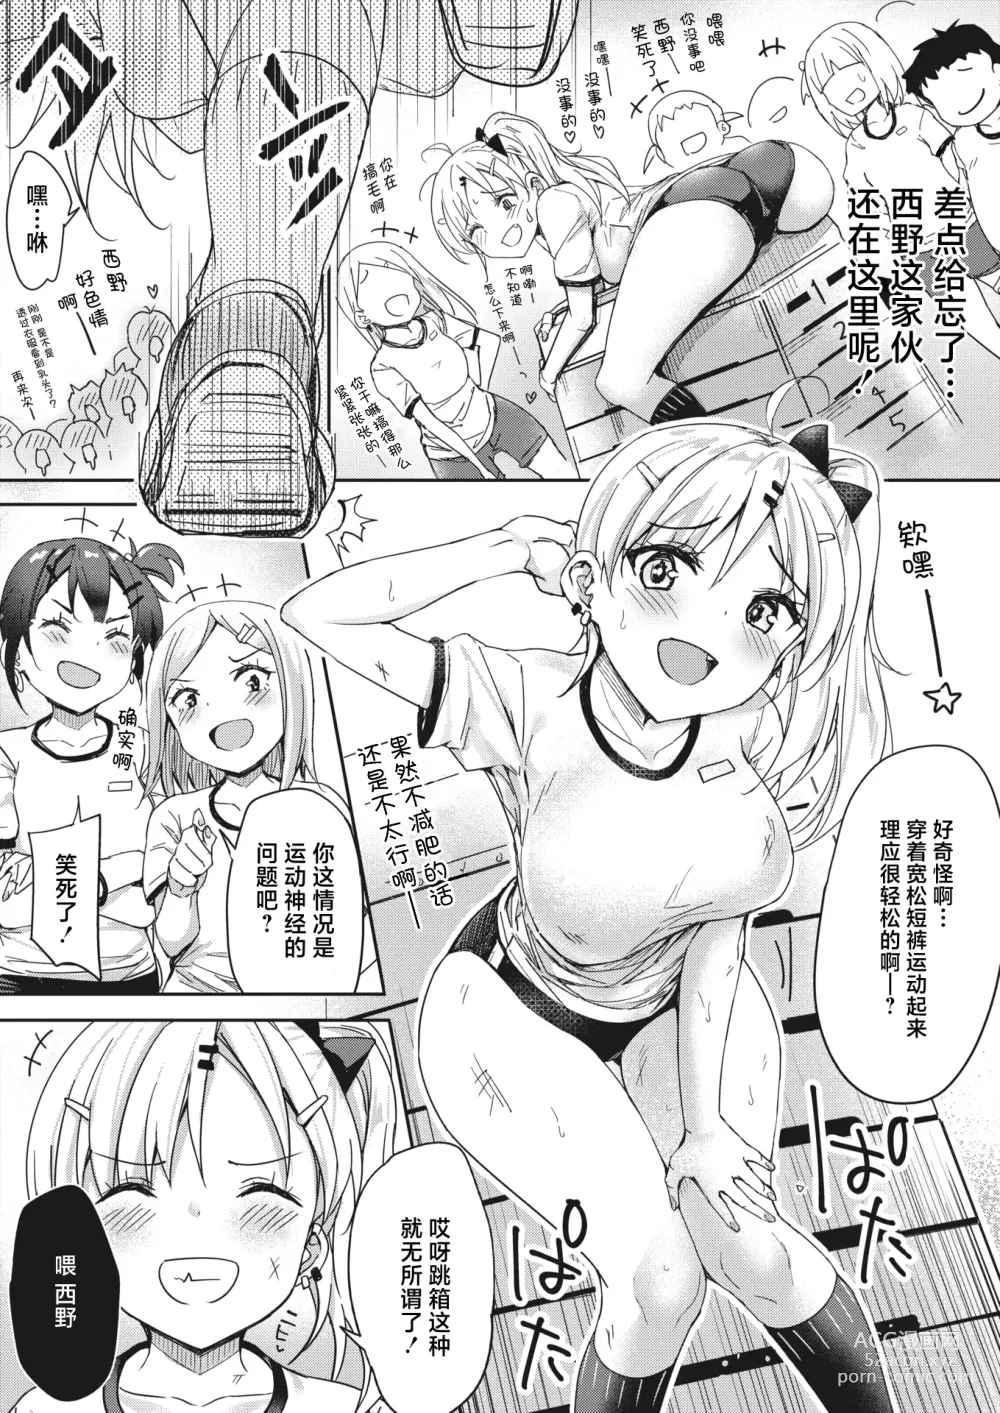 Page 2 of manga Tobi Pako to Tokkun shitai